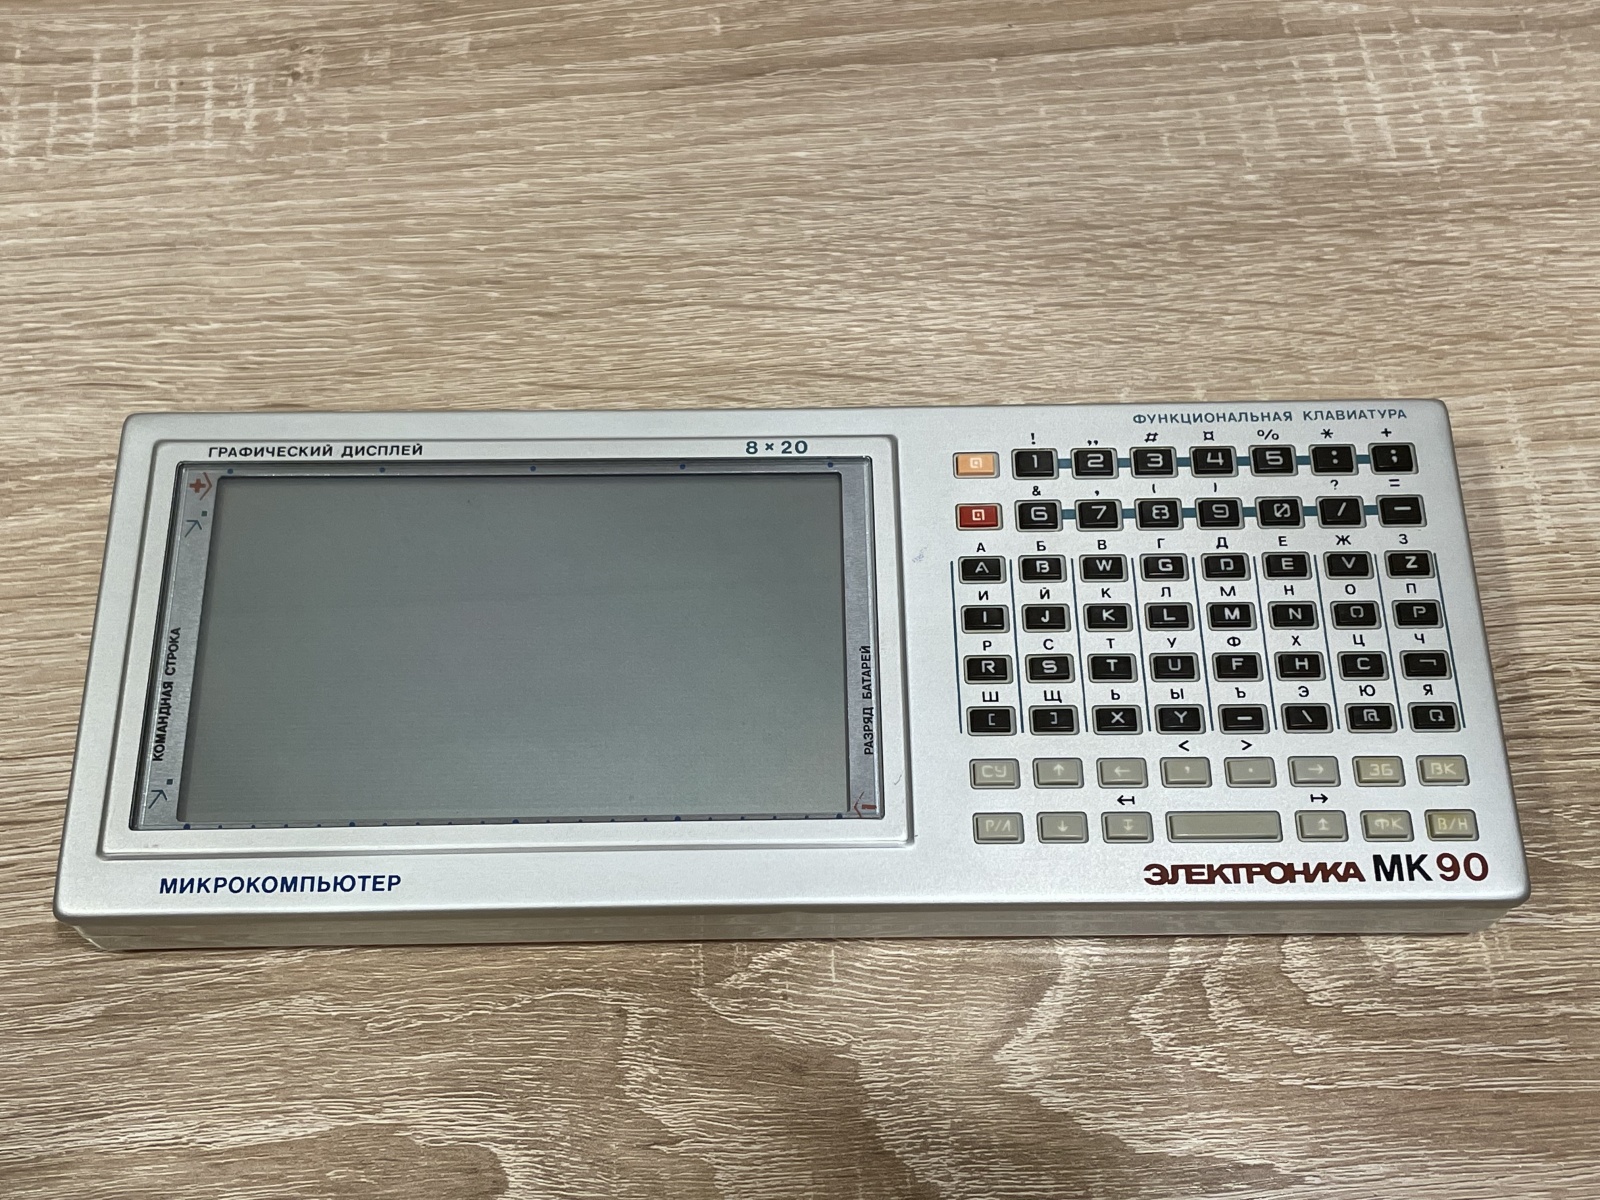 Игры на советском калькуляторе МК-90 - 1